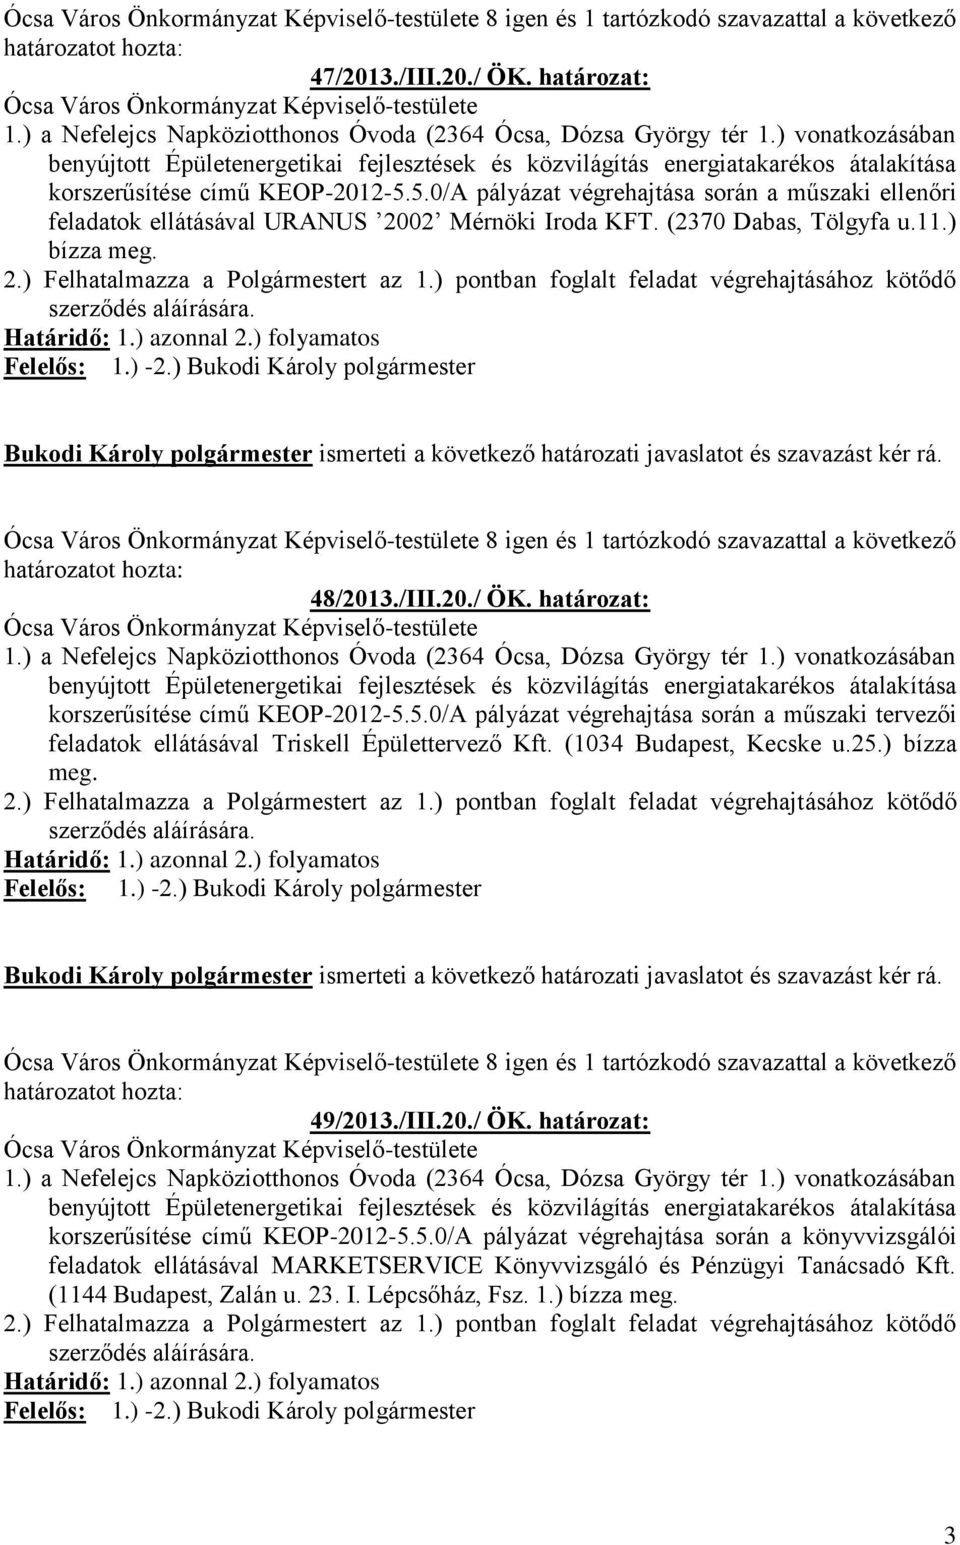 /III.20./ ÖK. határozat: korszerűsítése című KEOP-2012-5.5.0/A pályázat végrehajtása során a műszaki tervezői feladatok ellátásával Triskell Épülettervező Kft. (1034 Budapest, Kecske u.25.) bízza meg.